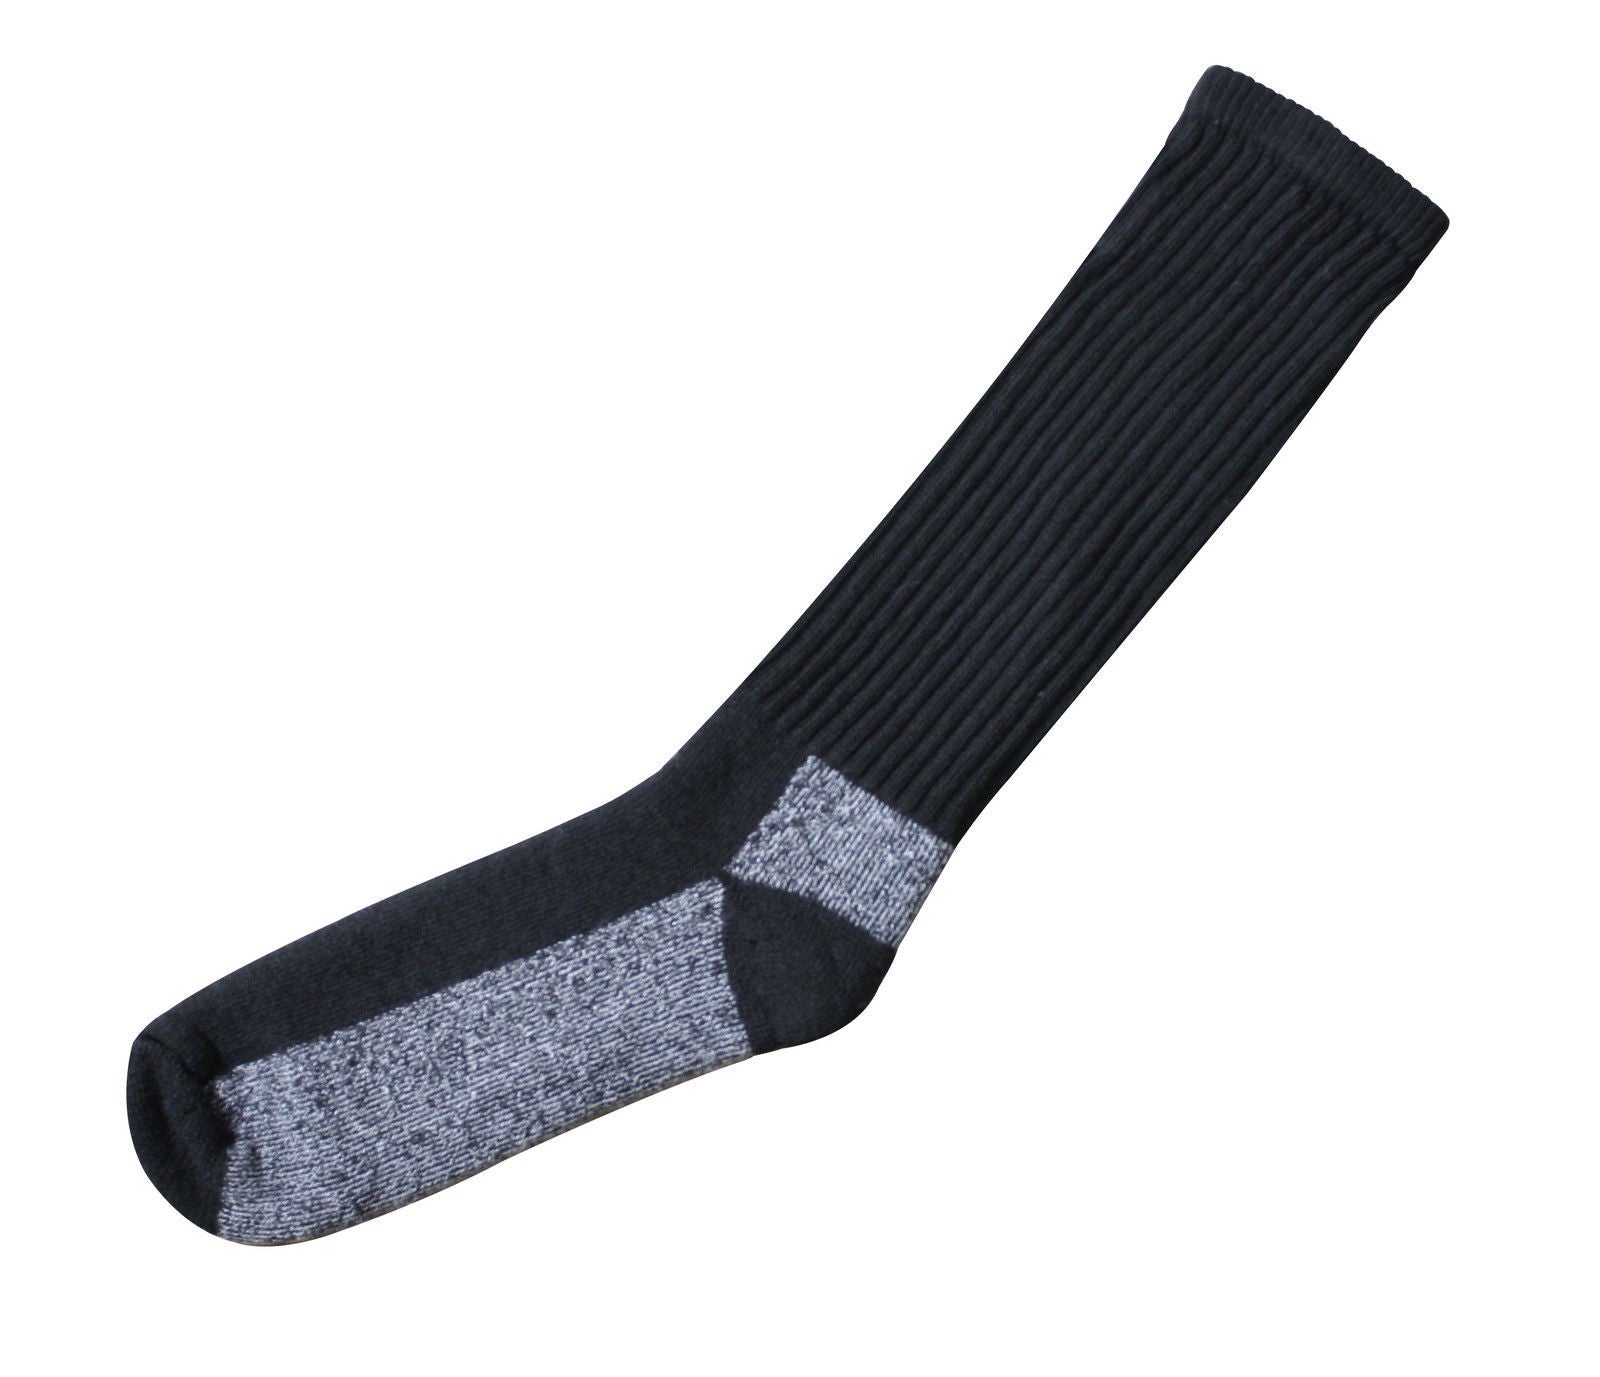 Merino Wool Chukka Boot Sock - Black Or Desert Sand - Wicks Away Moist ...